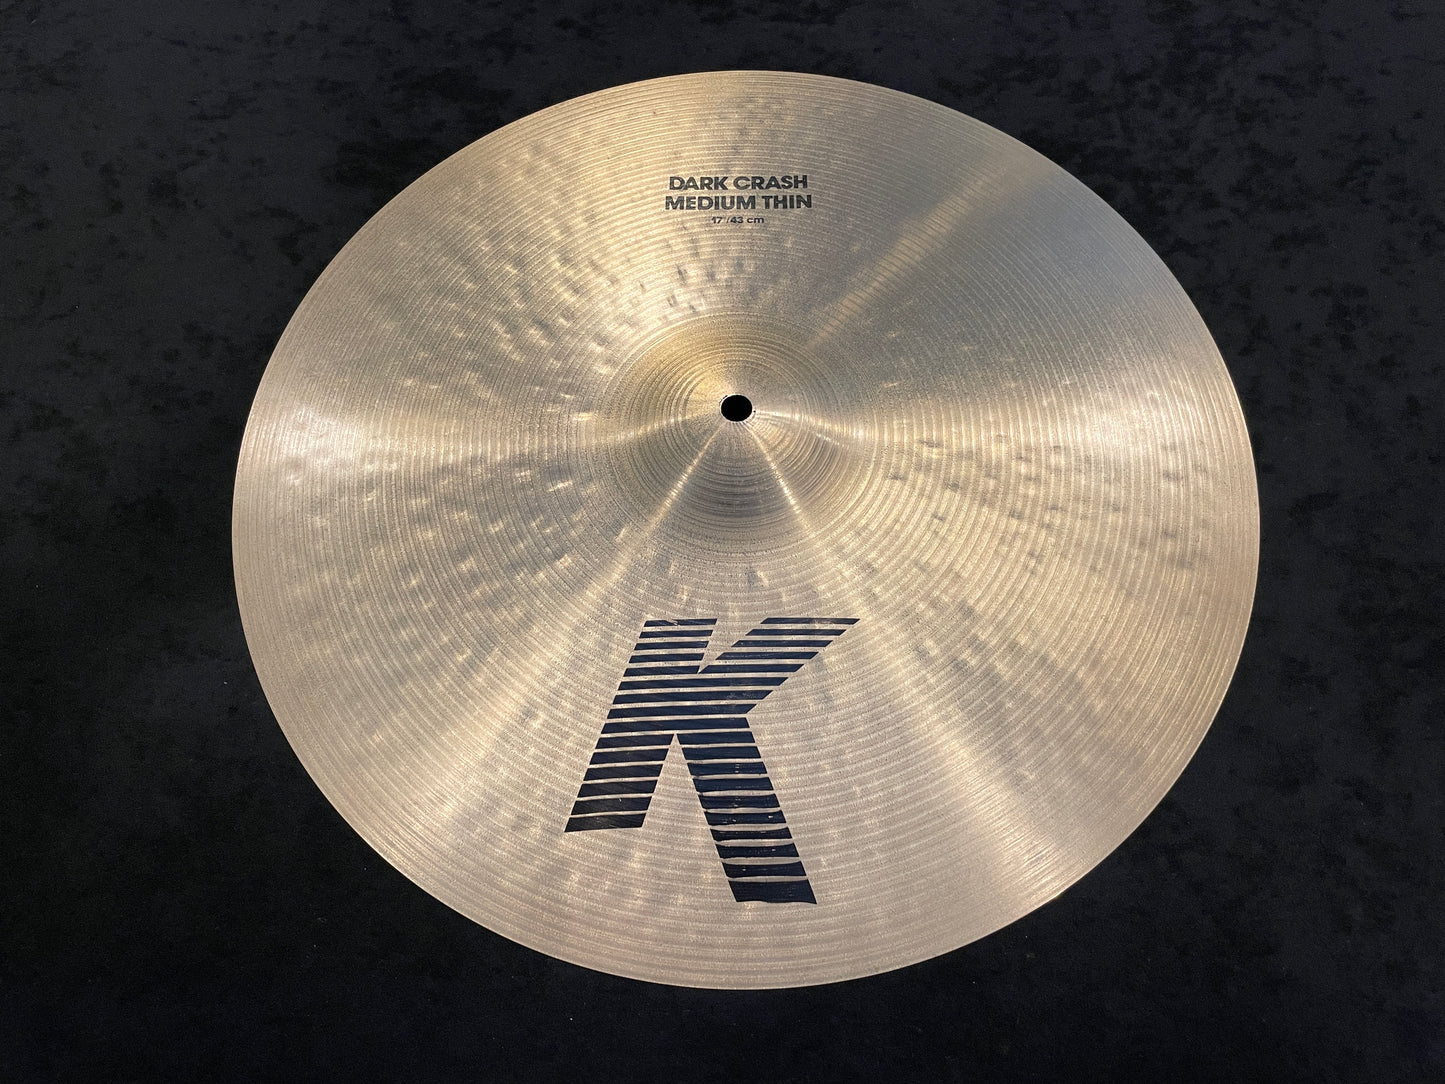 17" K Zildjian Dark Crash Medium Thin Cymbal 1366g